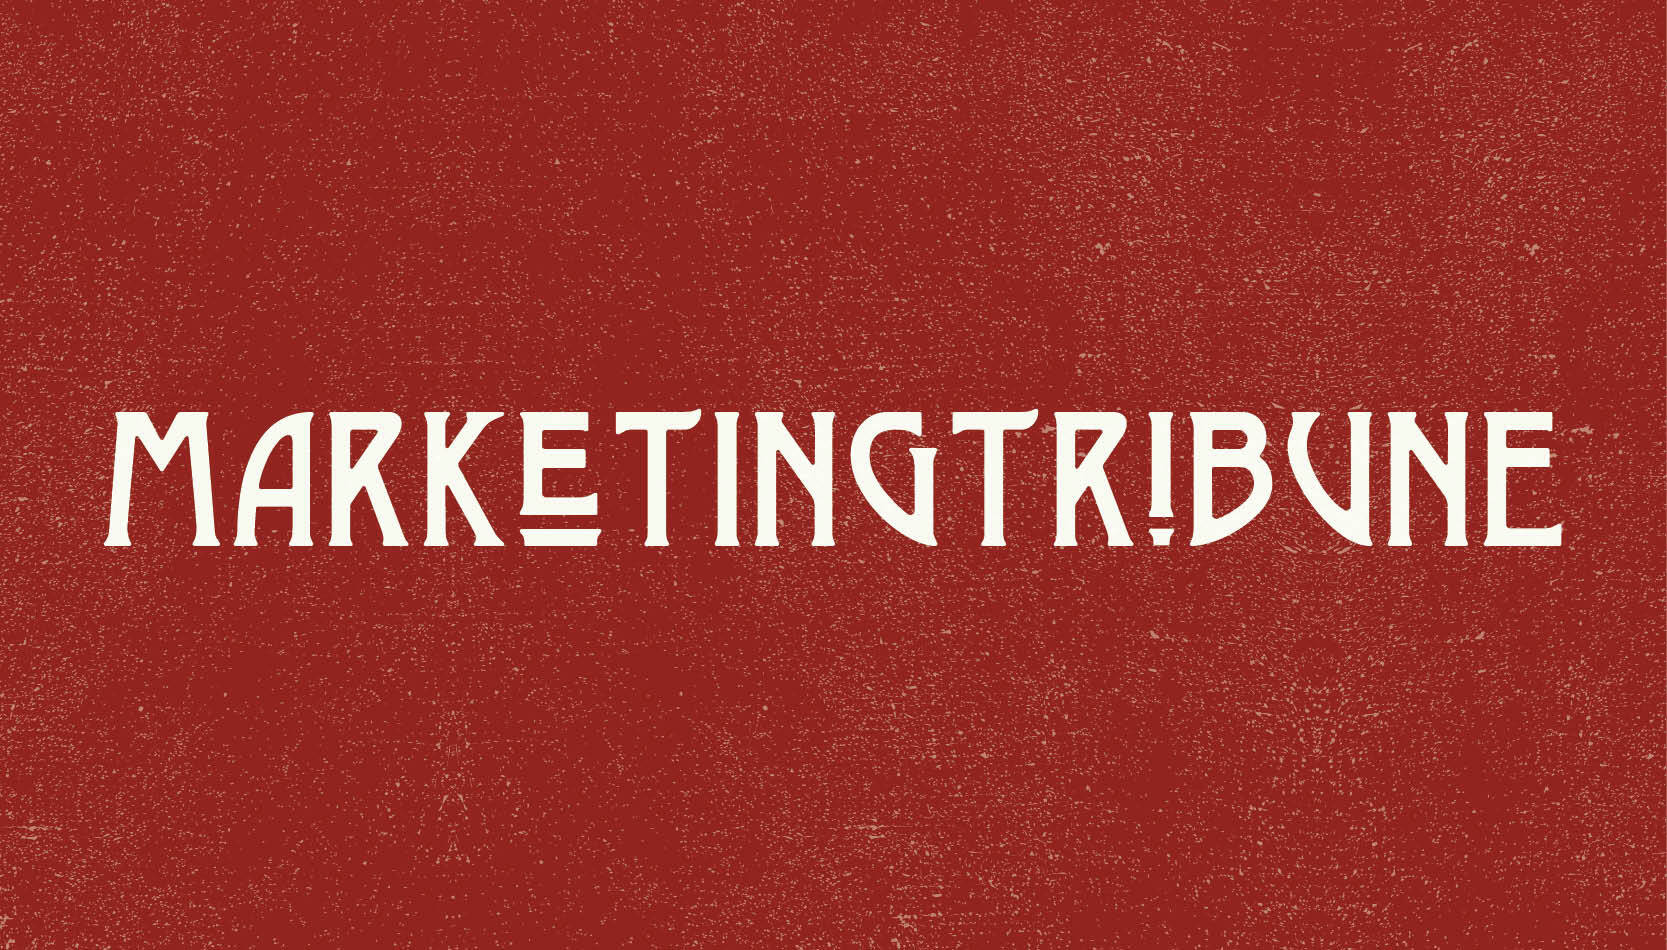 Marketing tribune logo